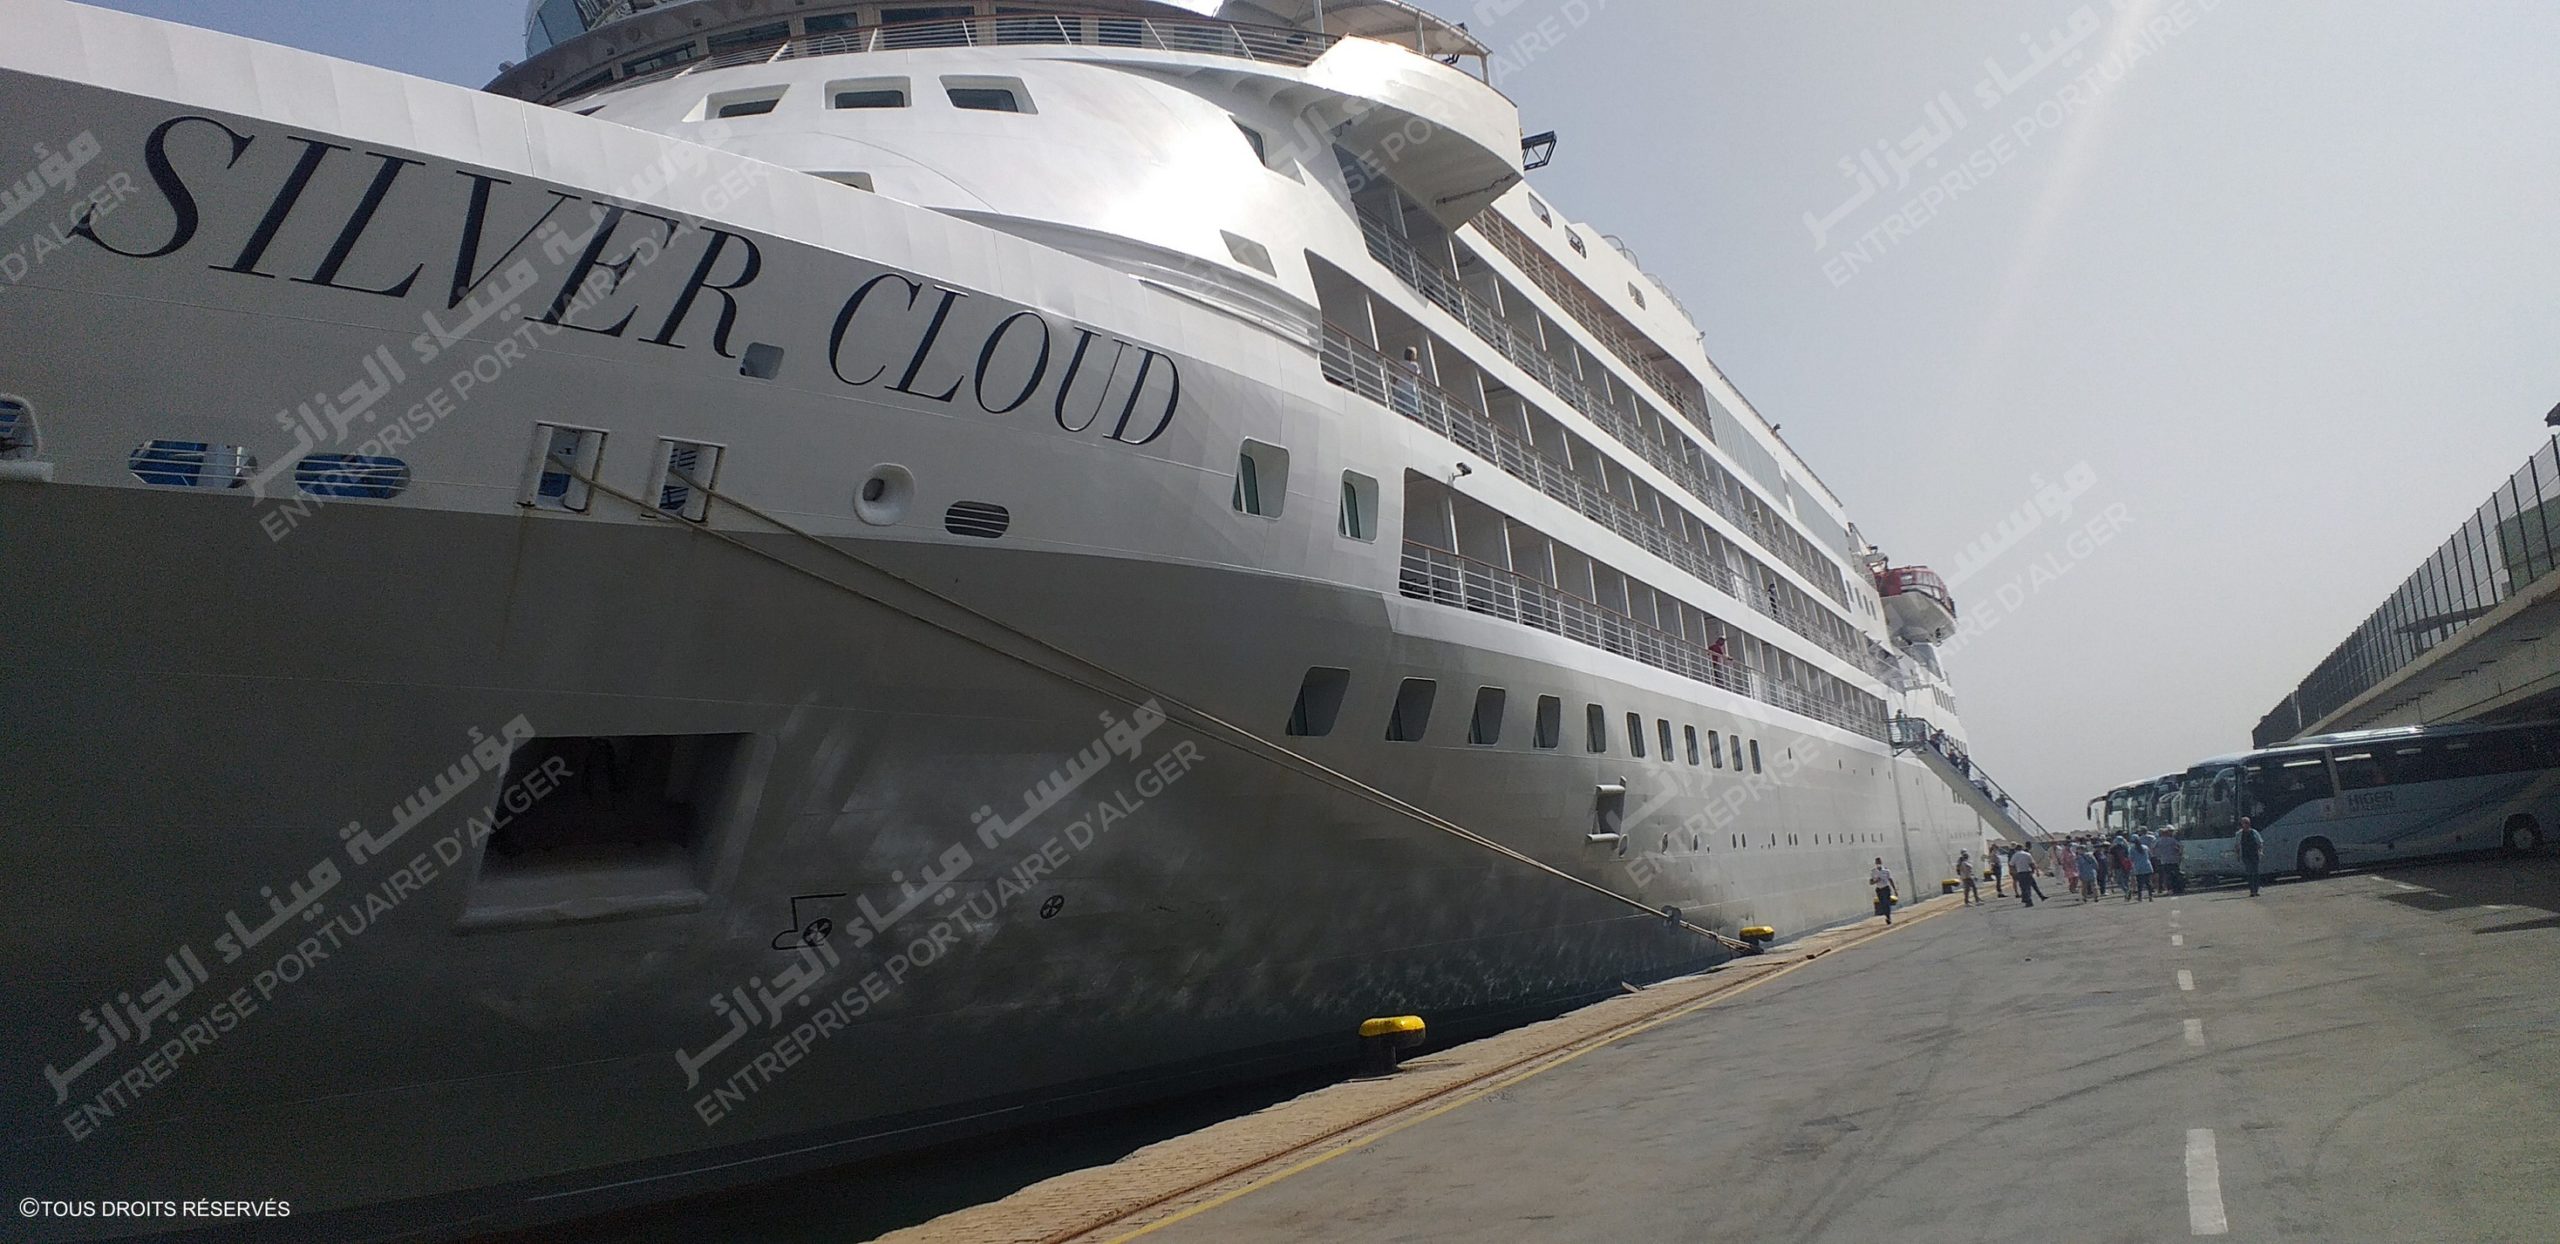 Accostage du bateau de croisière Sylver Cloud au port d’Alger